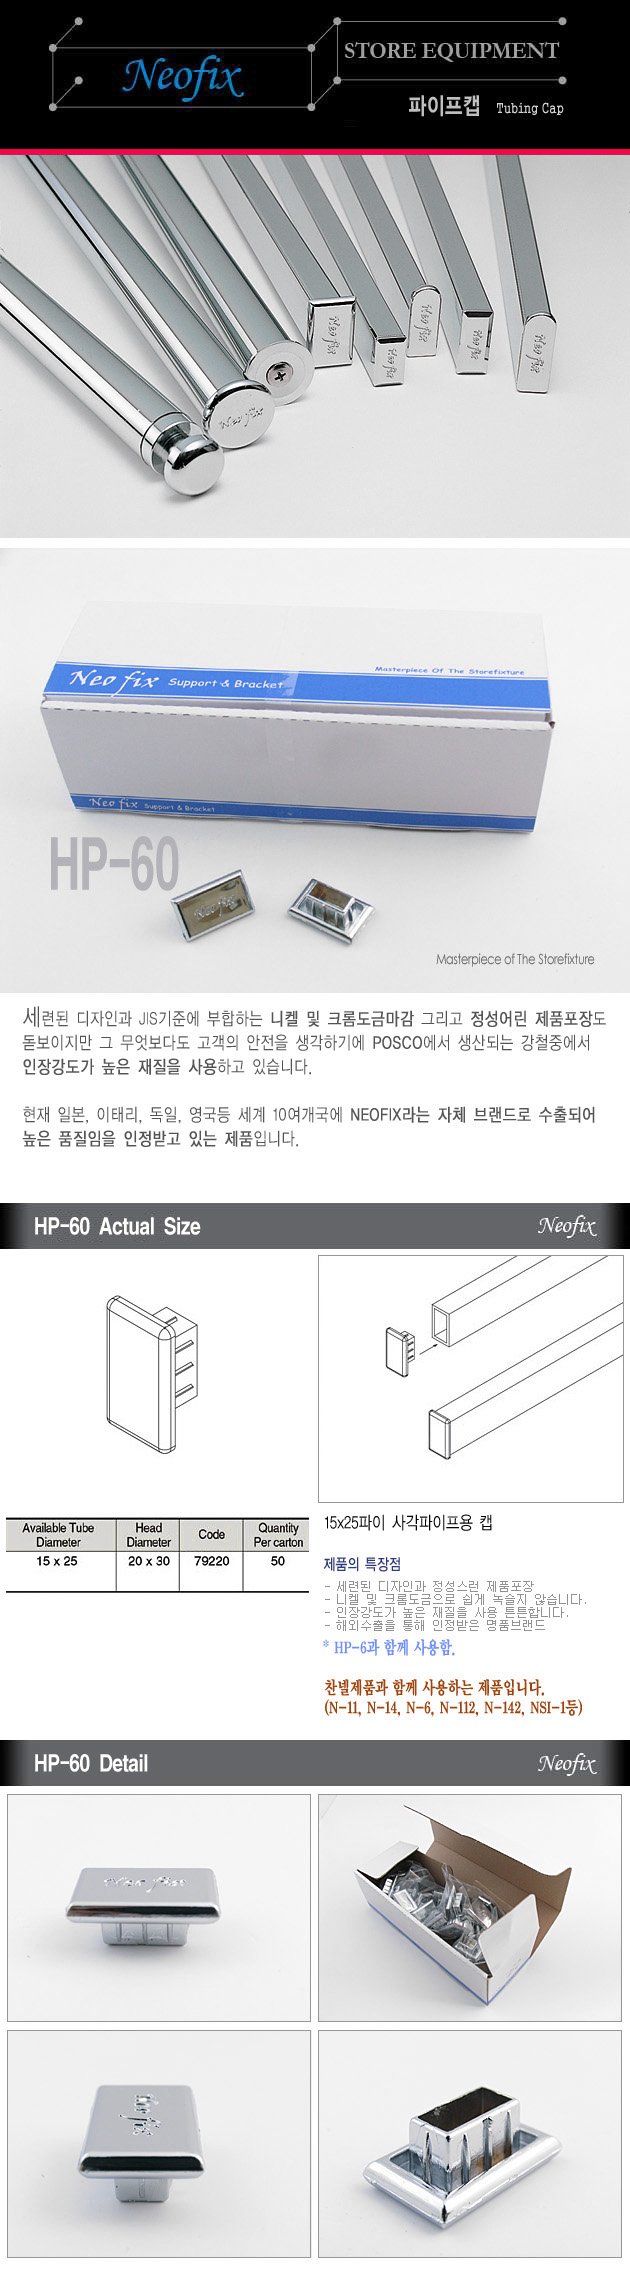 HP-60